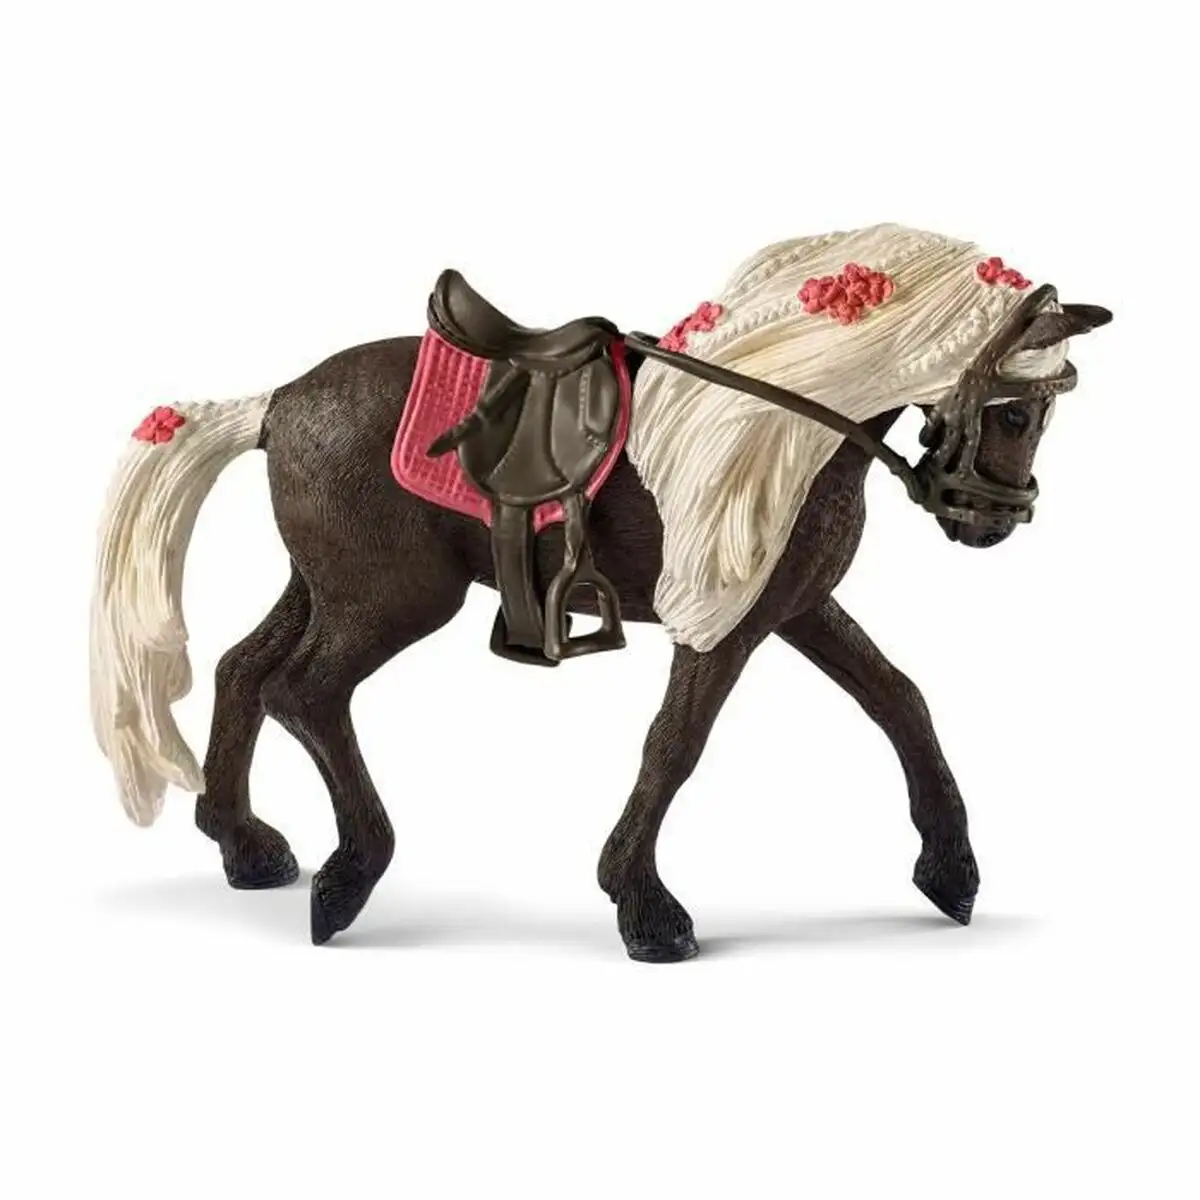 Cheval schleich rocky mountain cheval plastique_4391. DIAYTAR SENEGAL - Votre Destinée Shopping Personnalisée. Plongez dans notre boutique en ligne et créez votre propre expérience de shopping en choisissant parmi nos produits variés.